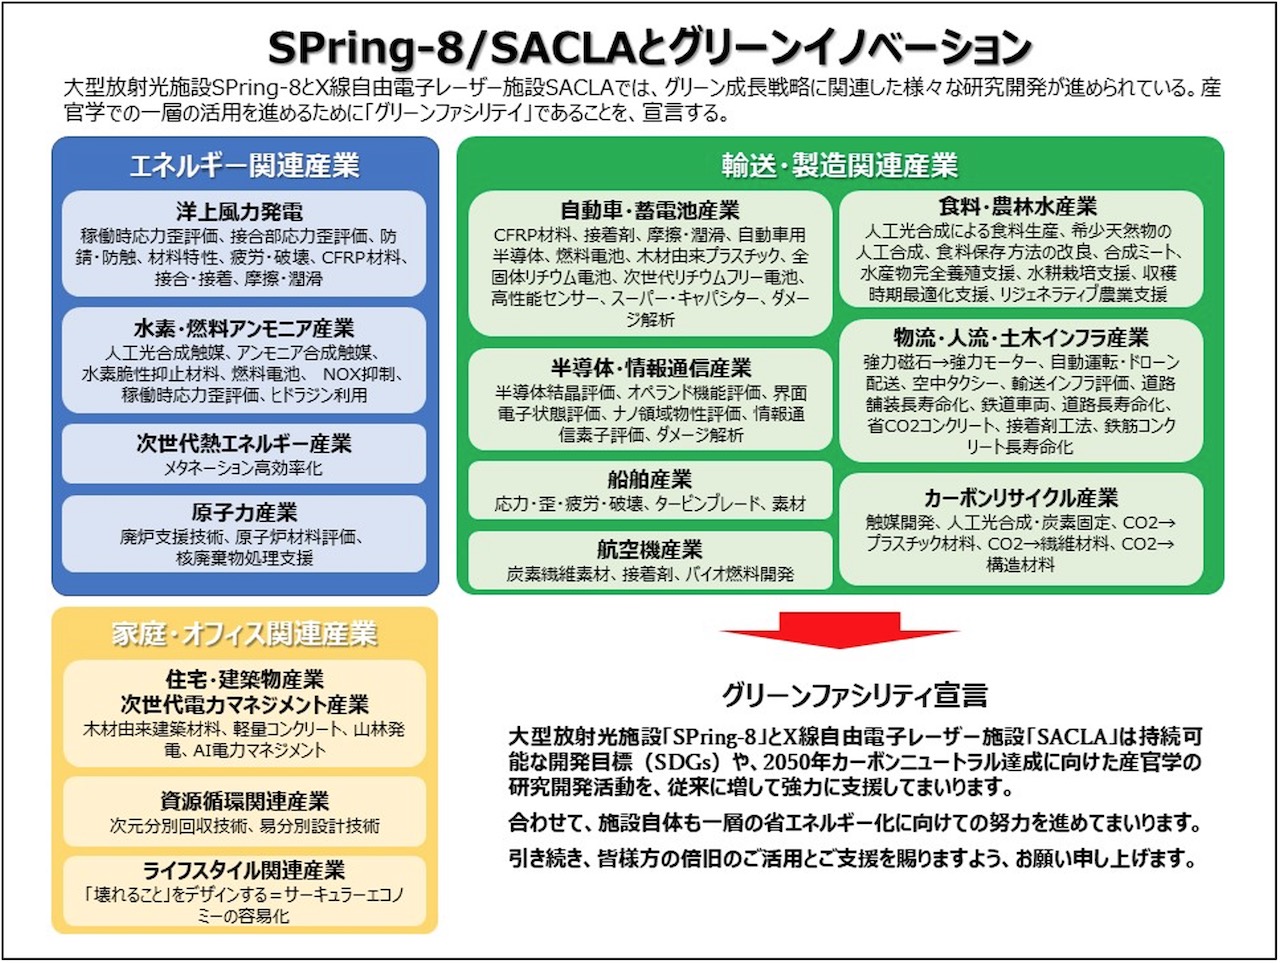 SPring-8およびSACLAの利用課題とグリーン成長戦略14分野との関係図表